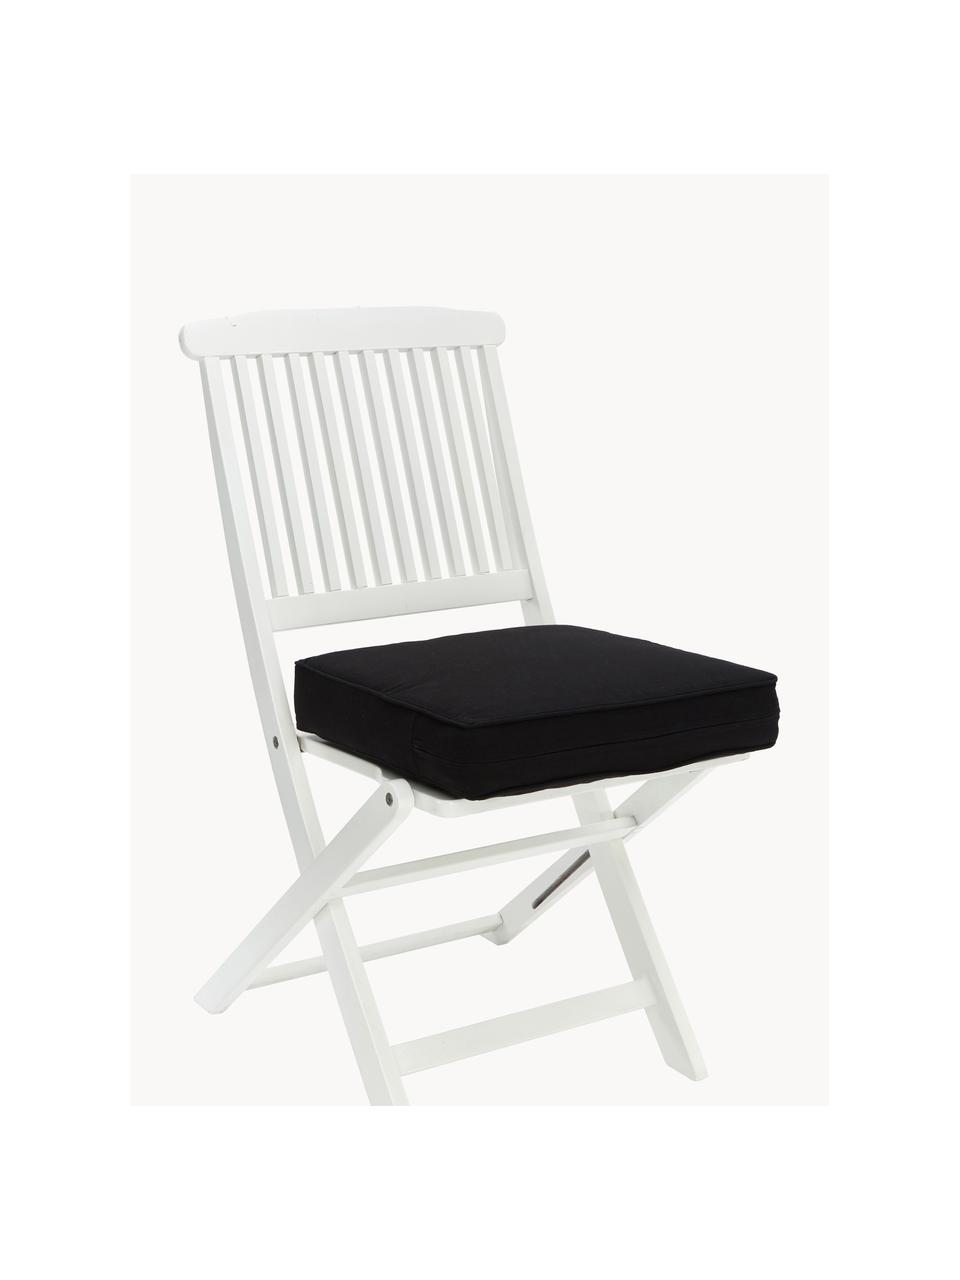 Wysoka poduszka na krzesło Zoey, 2 szt., Tapicerka: 100% bawełna, Czarny, S 40 x D 40 cm